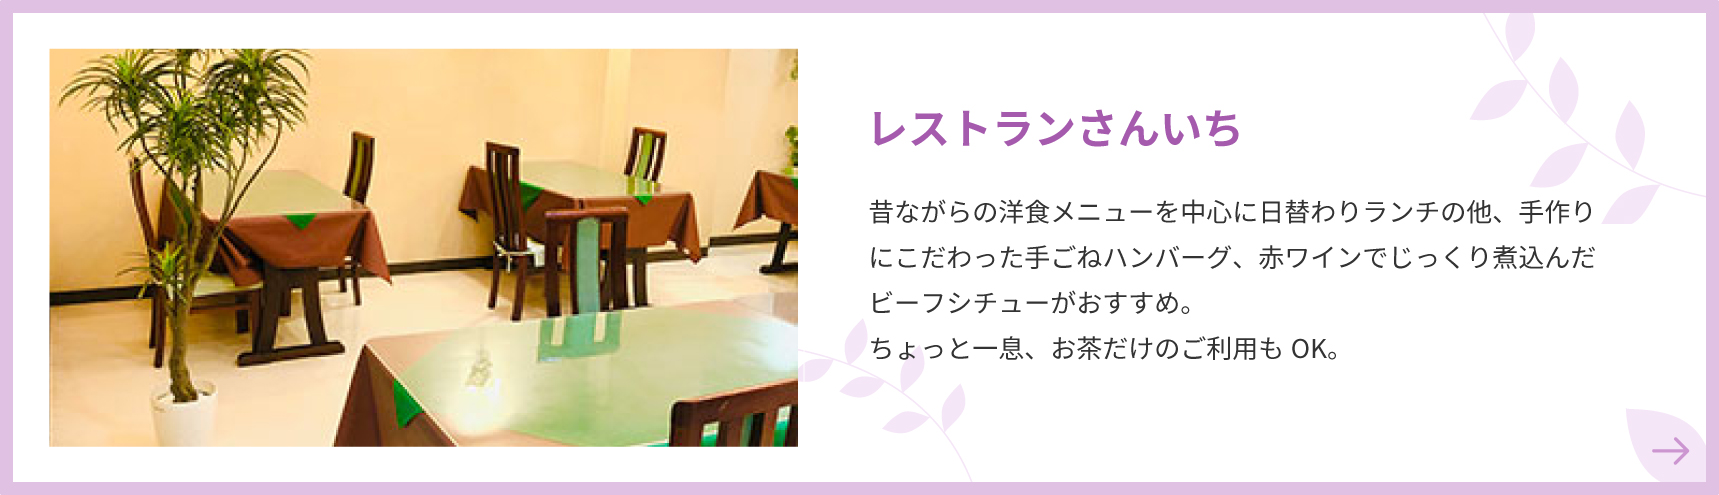 Restoranas Sanichi Be kasdienių pietų, kurių pagrindinis dėmesys skiriamas tradiciniams vakarietiškiems patiekalams, rekomenduojame rankų darbo minkytus mėsainius ir jautienos troškinį, lėtai troškintą raudoname vyne.Galite padaryti pertrauką ir naudoti tik arbatai.